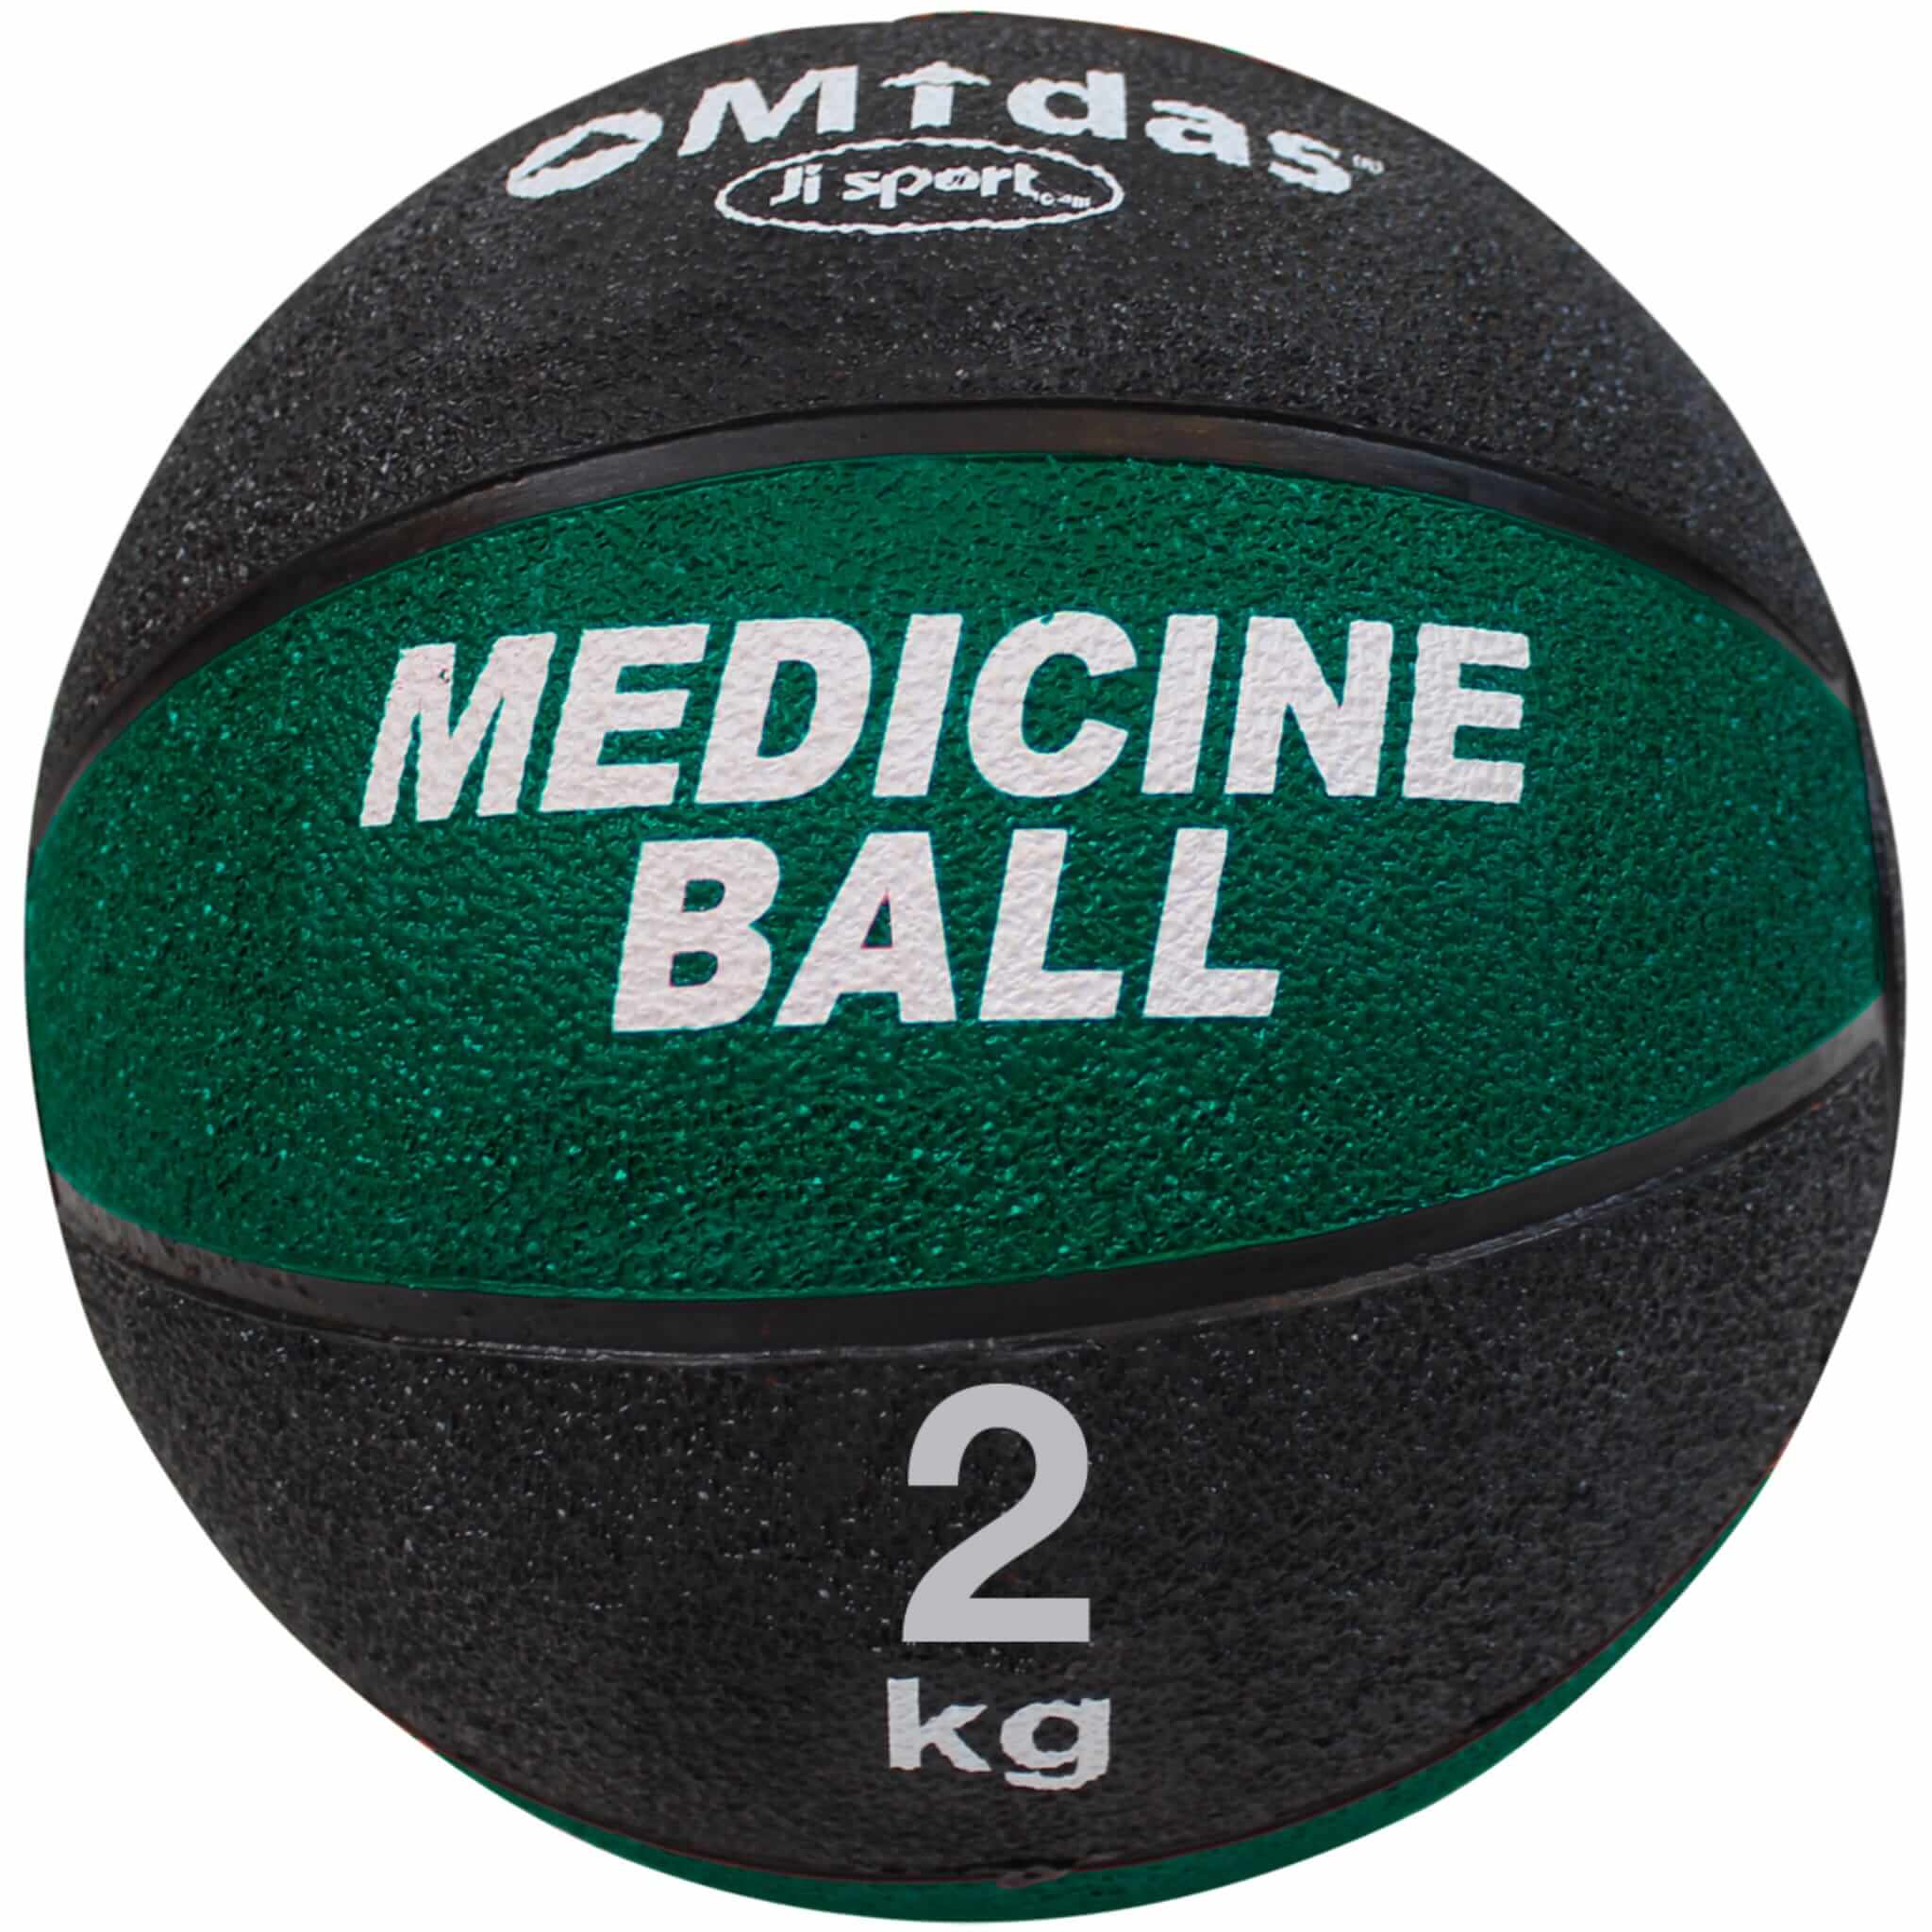 Medisinball 2 kg